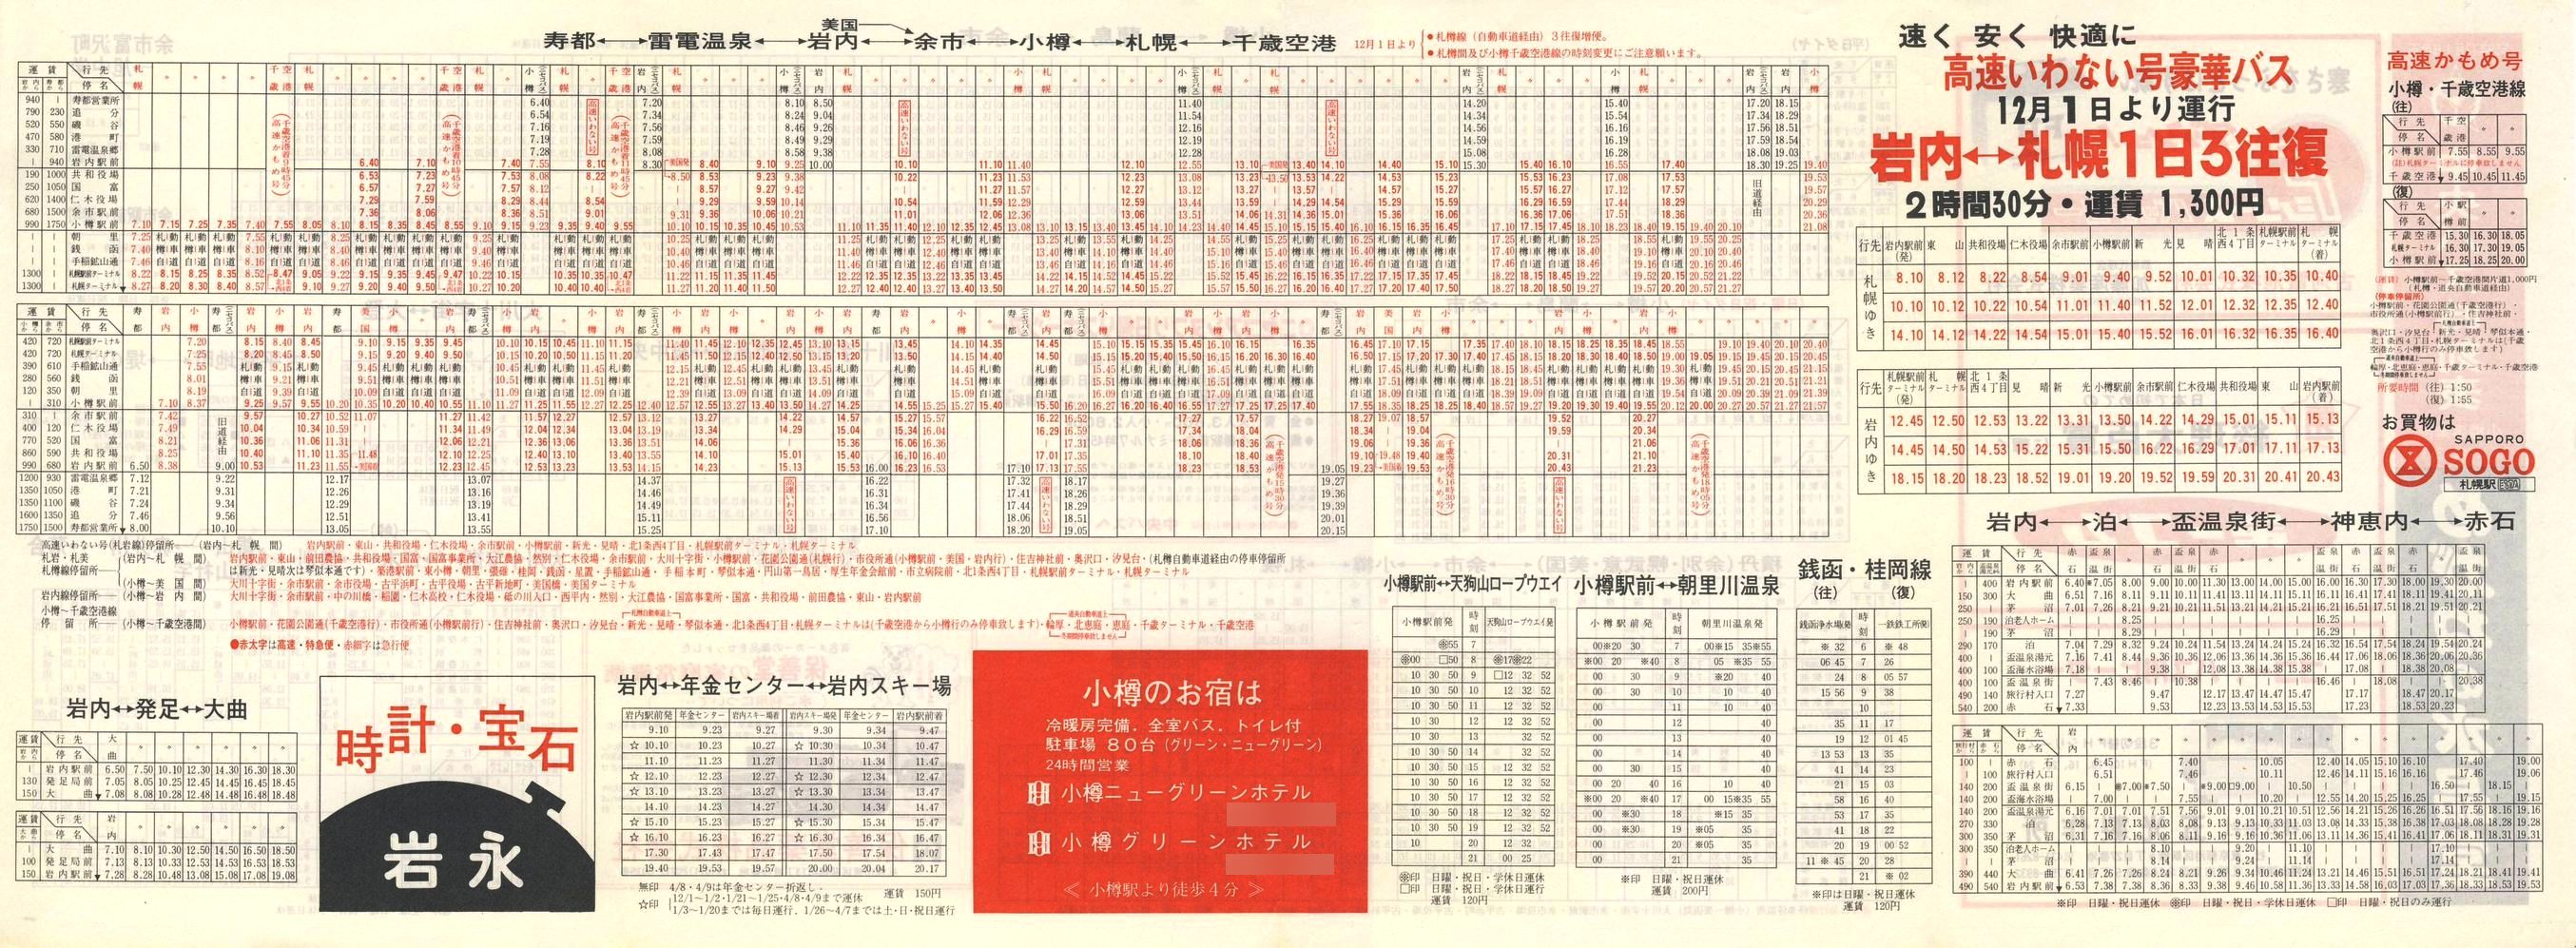 1984-12-01改正_北海道中央バス(小樽)_小樽事業部管内郊外線時刻表裏面